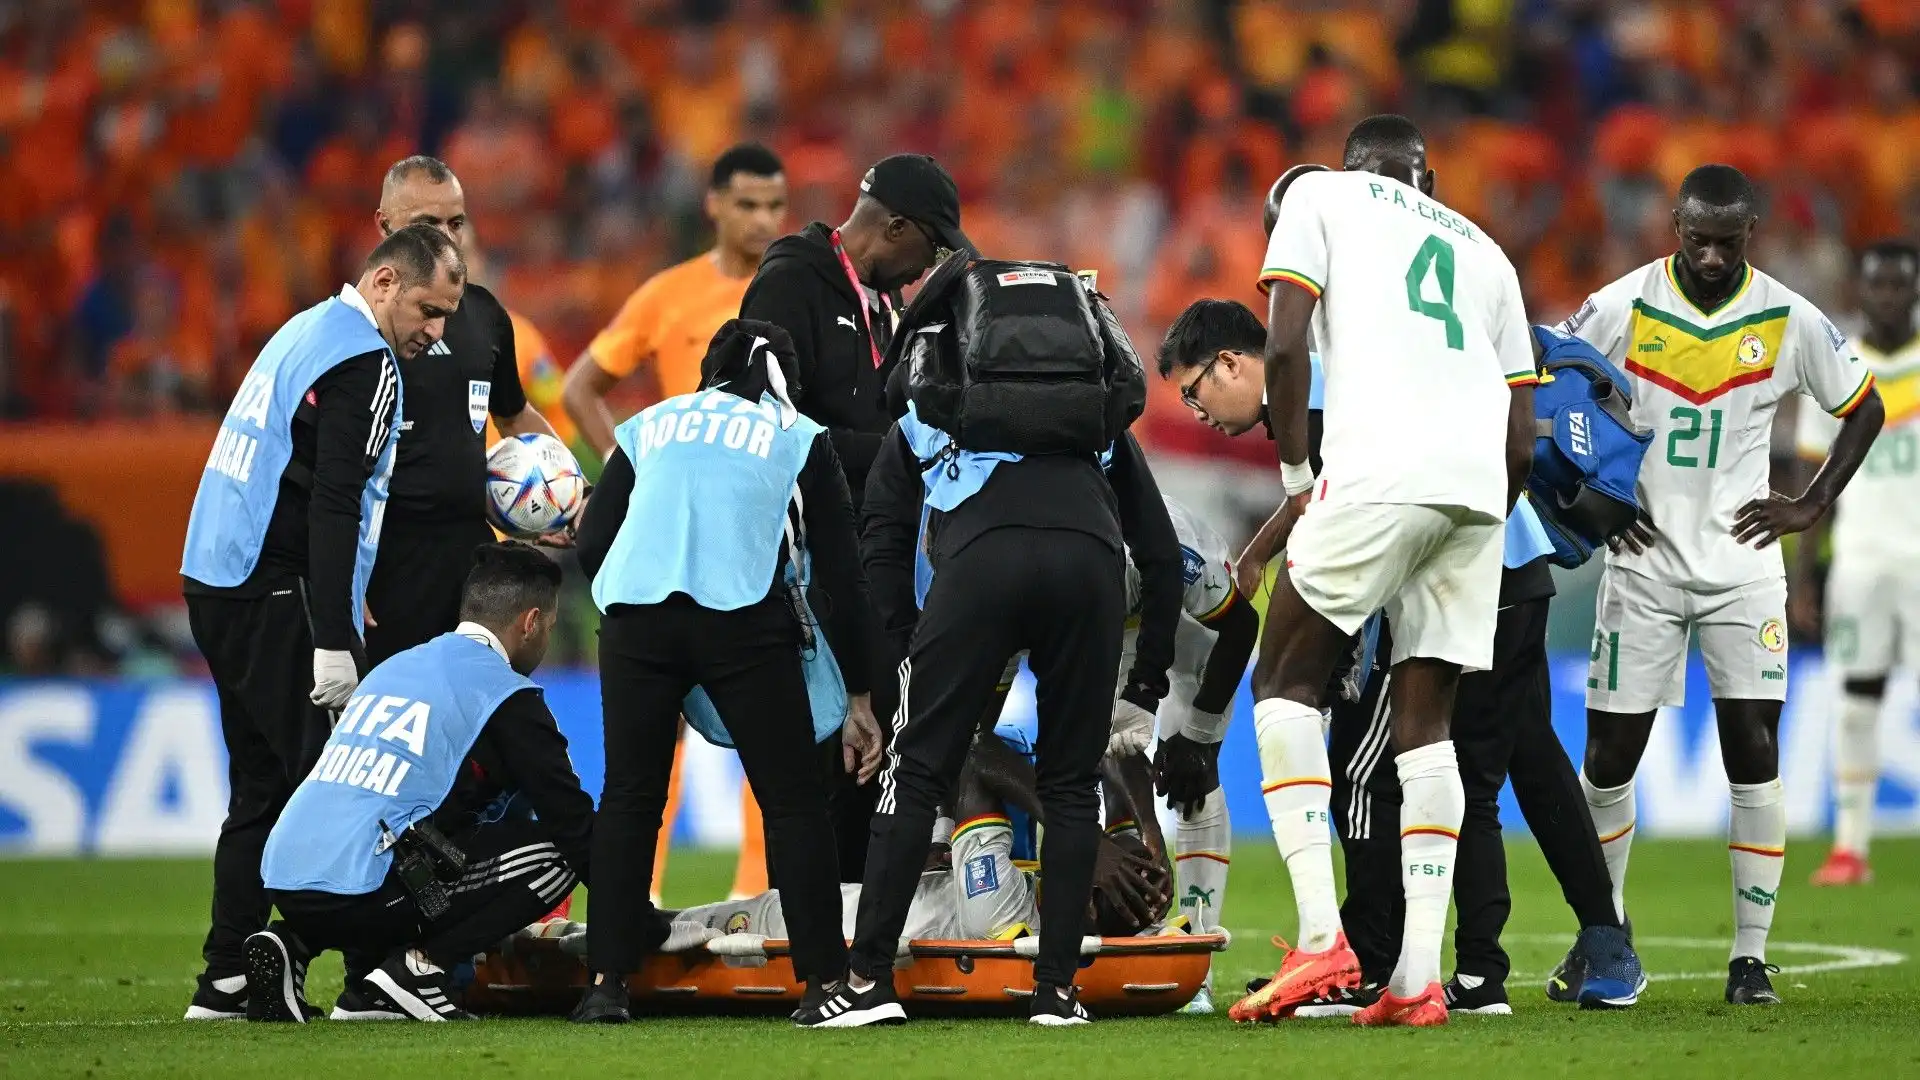 Il calciatore è stato soccorso dallo staff medico